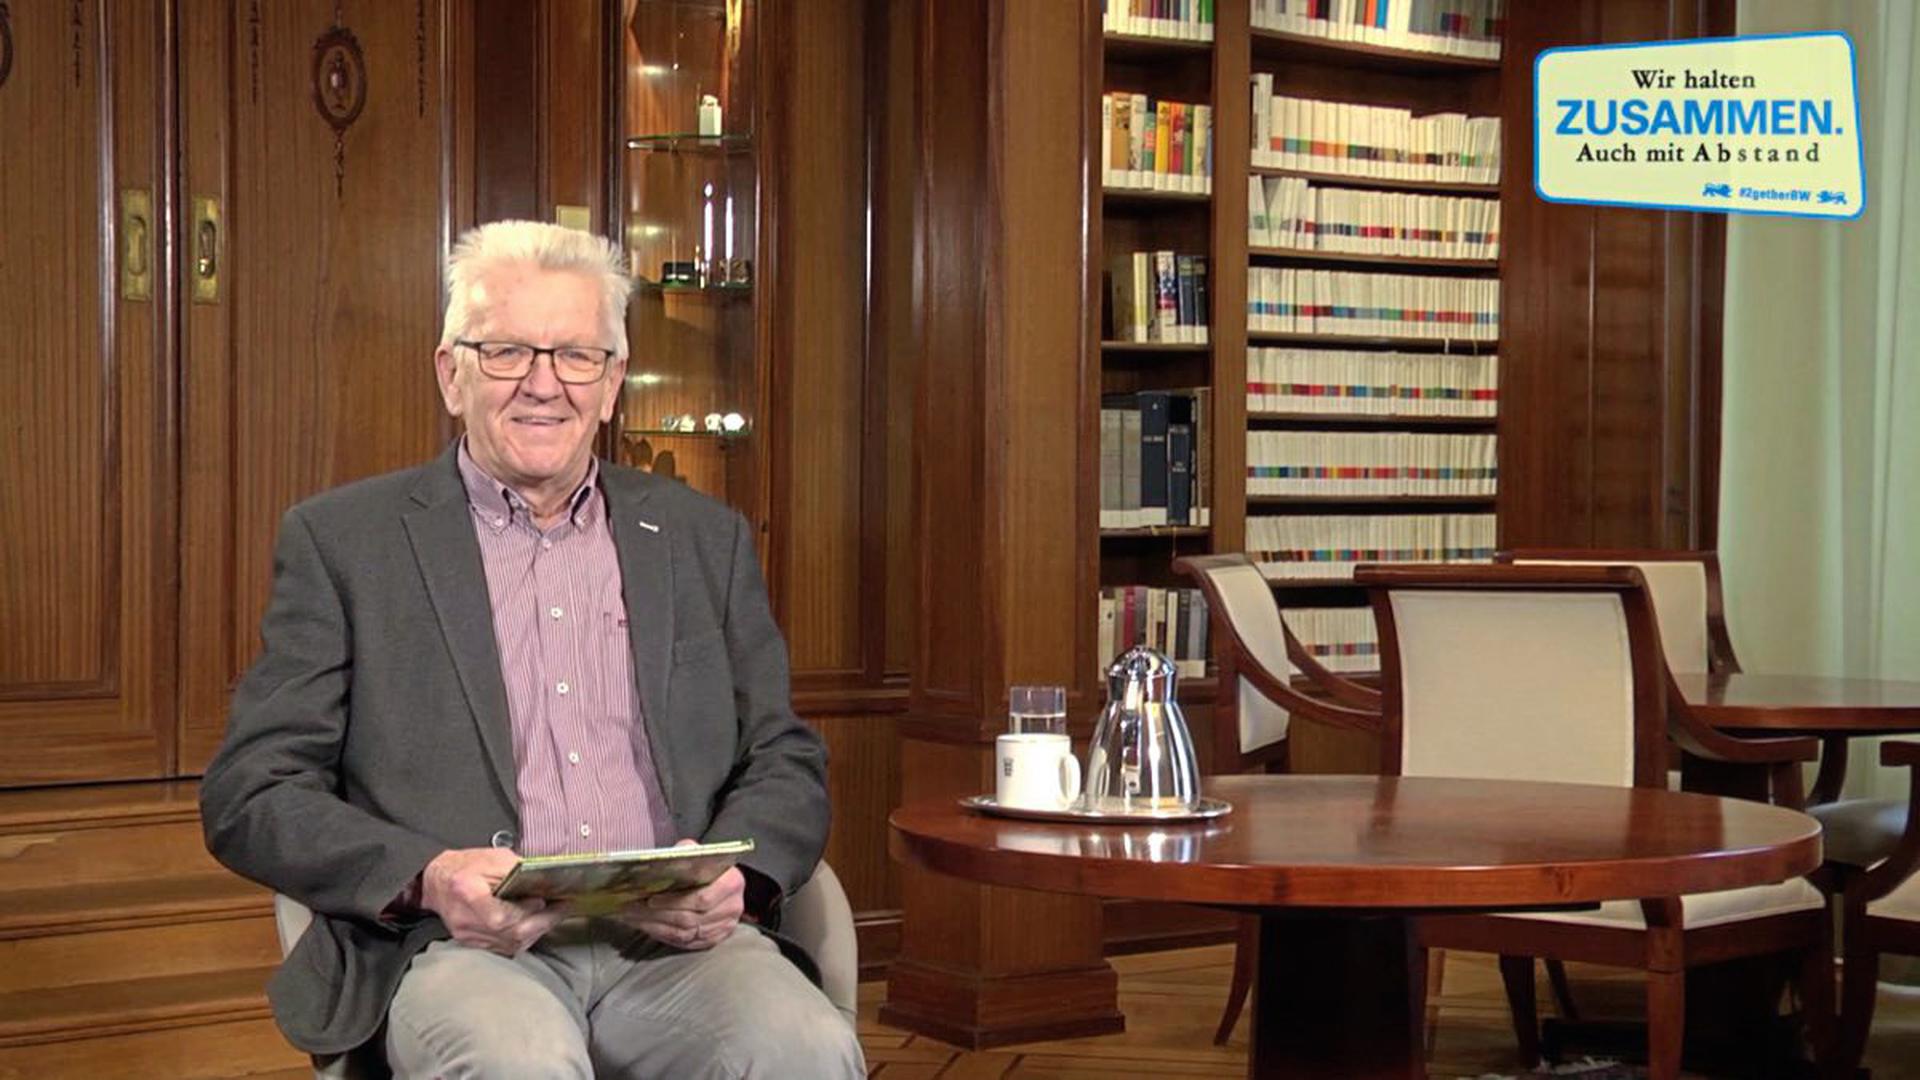 Zu Ostern liest Ministerpräsident Kretschmann sein Lieblingskinderbuch "Der Grüffelo" im Internet vor – auch auf Schwäbisch.